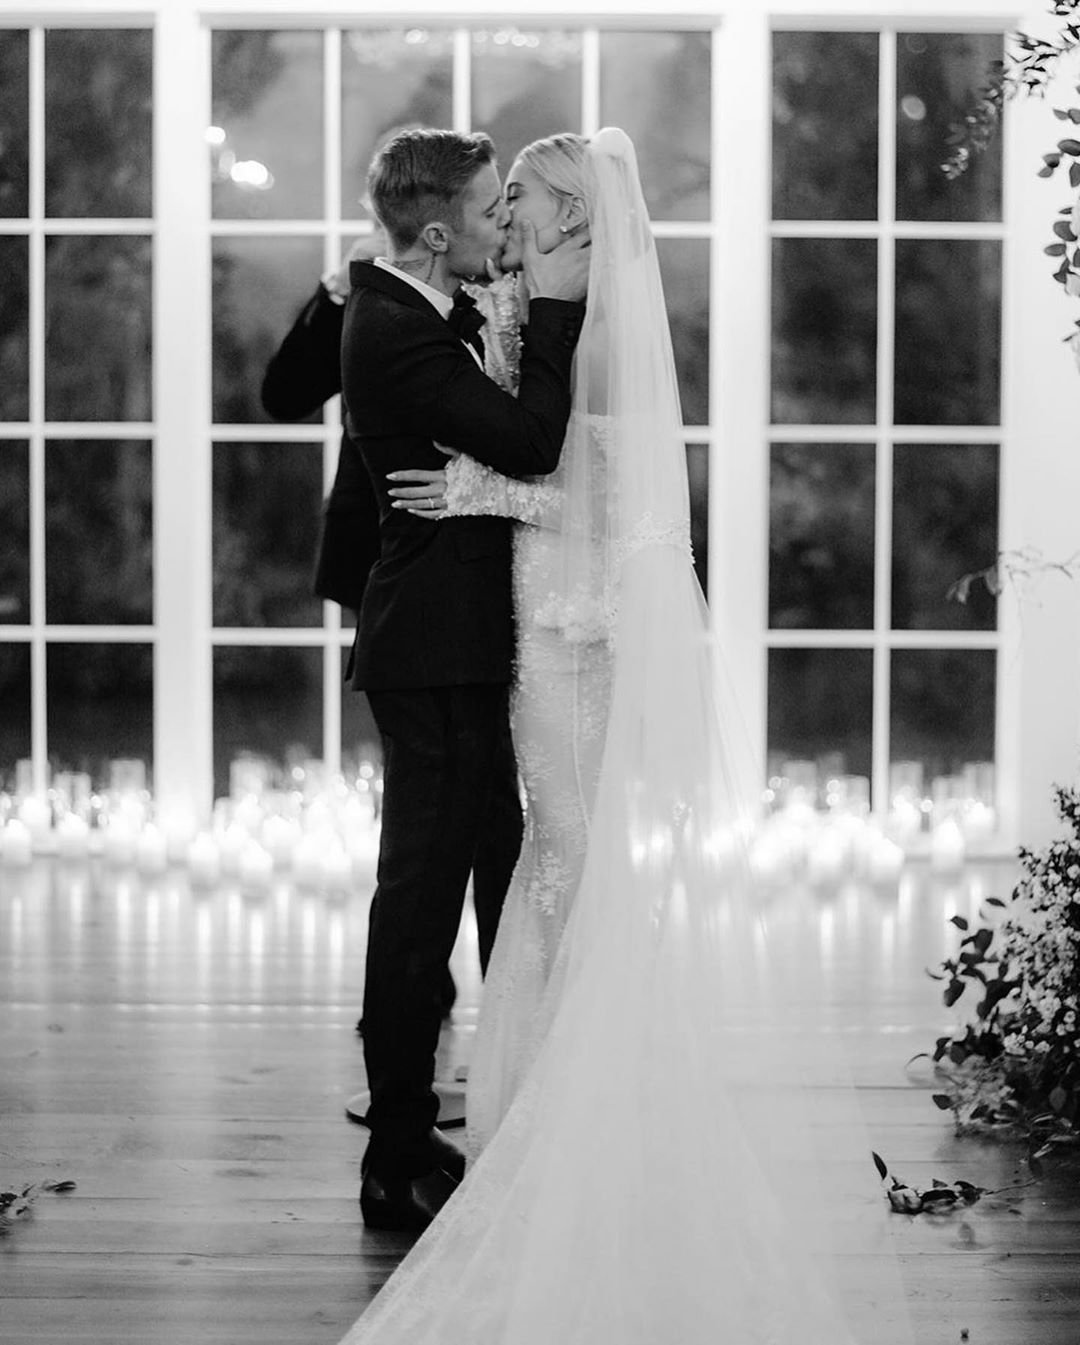 Джастин Бибер трогательно поздравил жену с первой годовщиной свадьбы